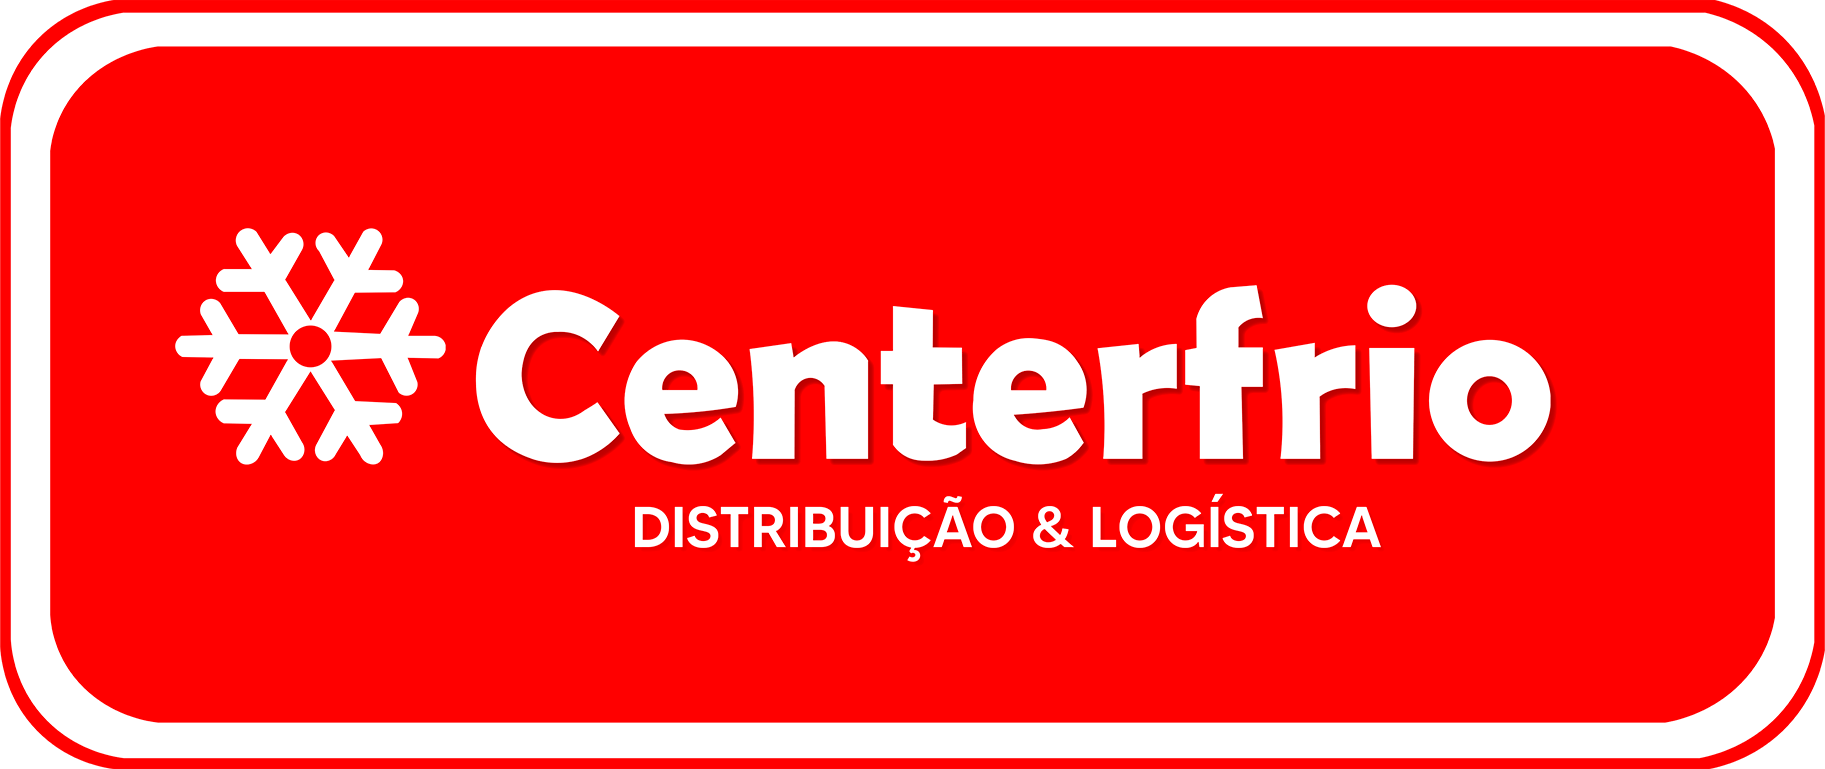 CentralFrios